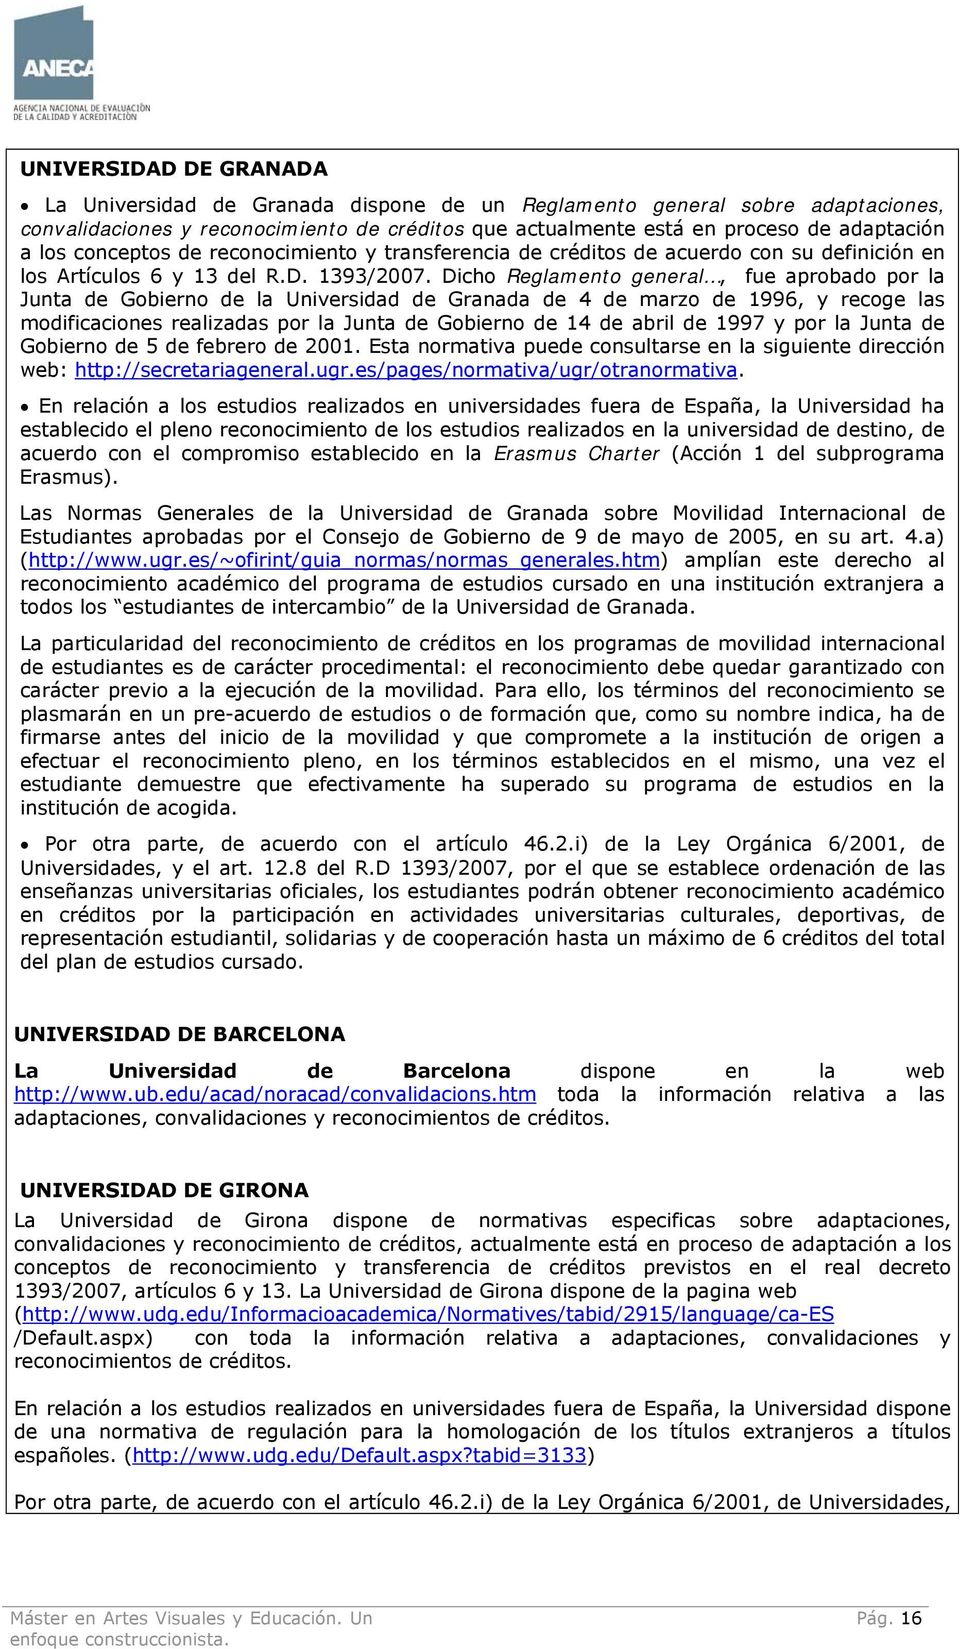 Dicho Reglamento general, fue aprobado por la Junta de Gobierno de la Universidad de Granada de 4 de marzo de 1996, y recoge las modificaciones realizadas por la Junta de Gobierno de 14 de abril de